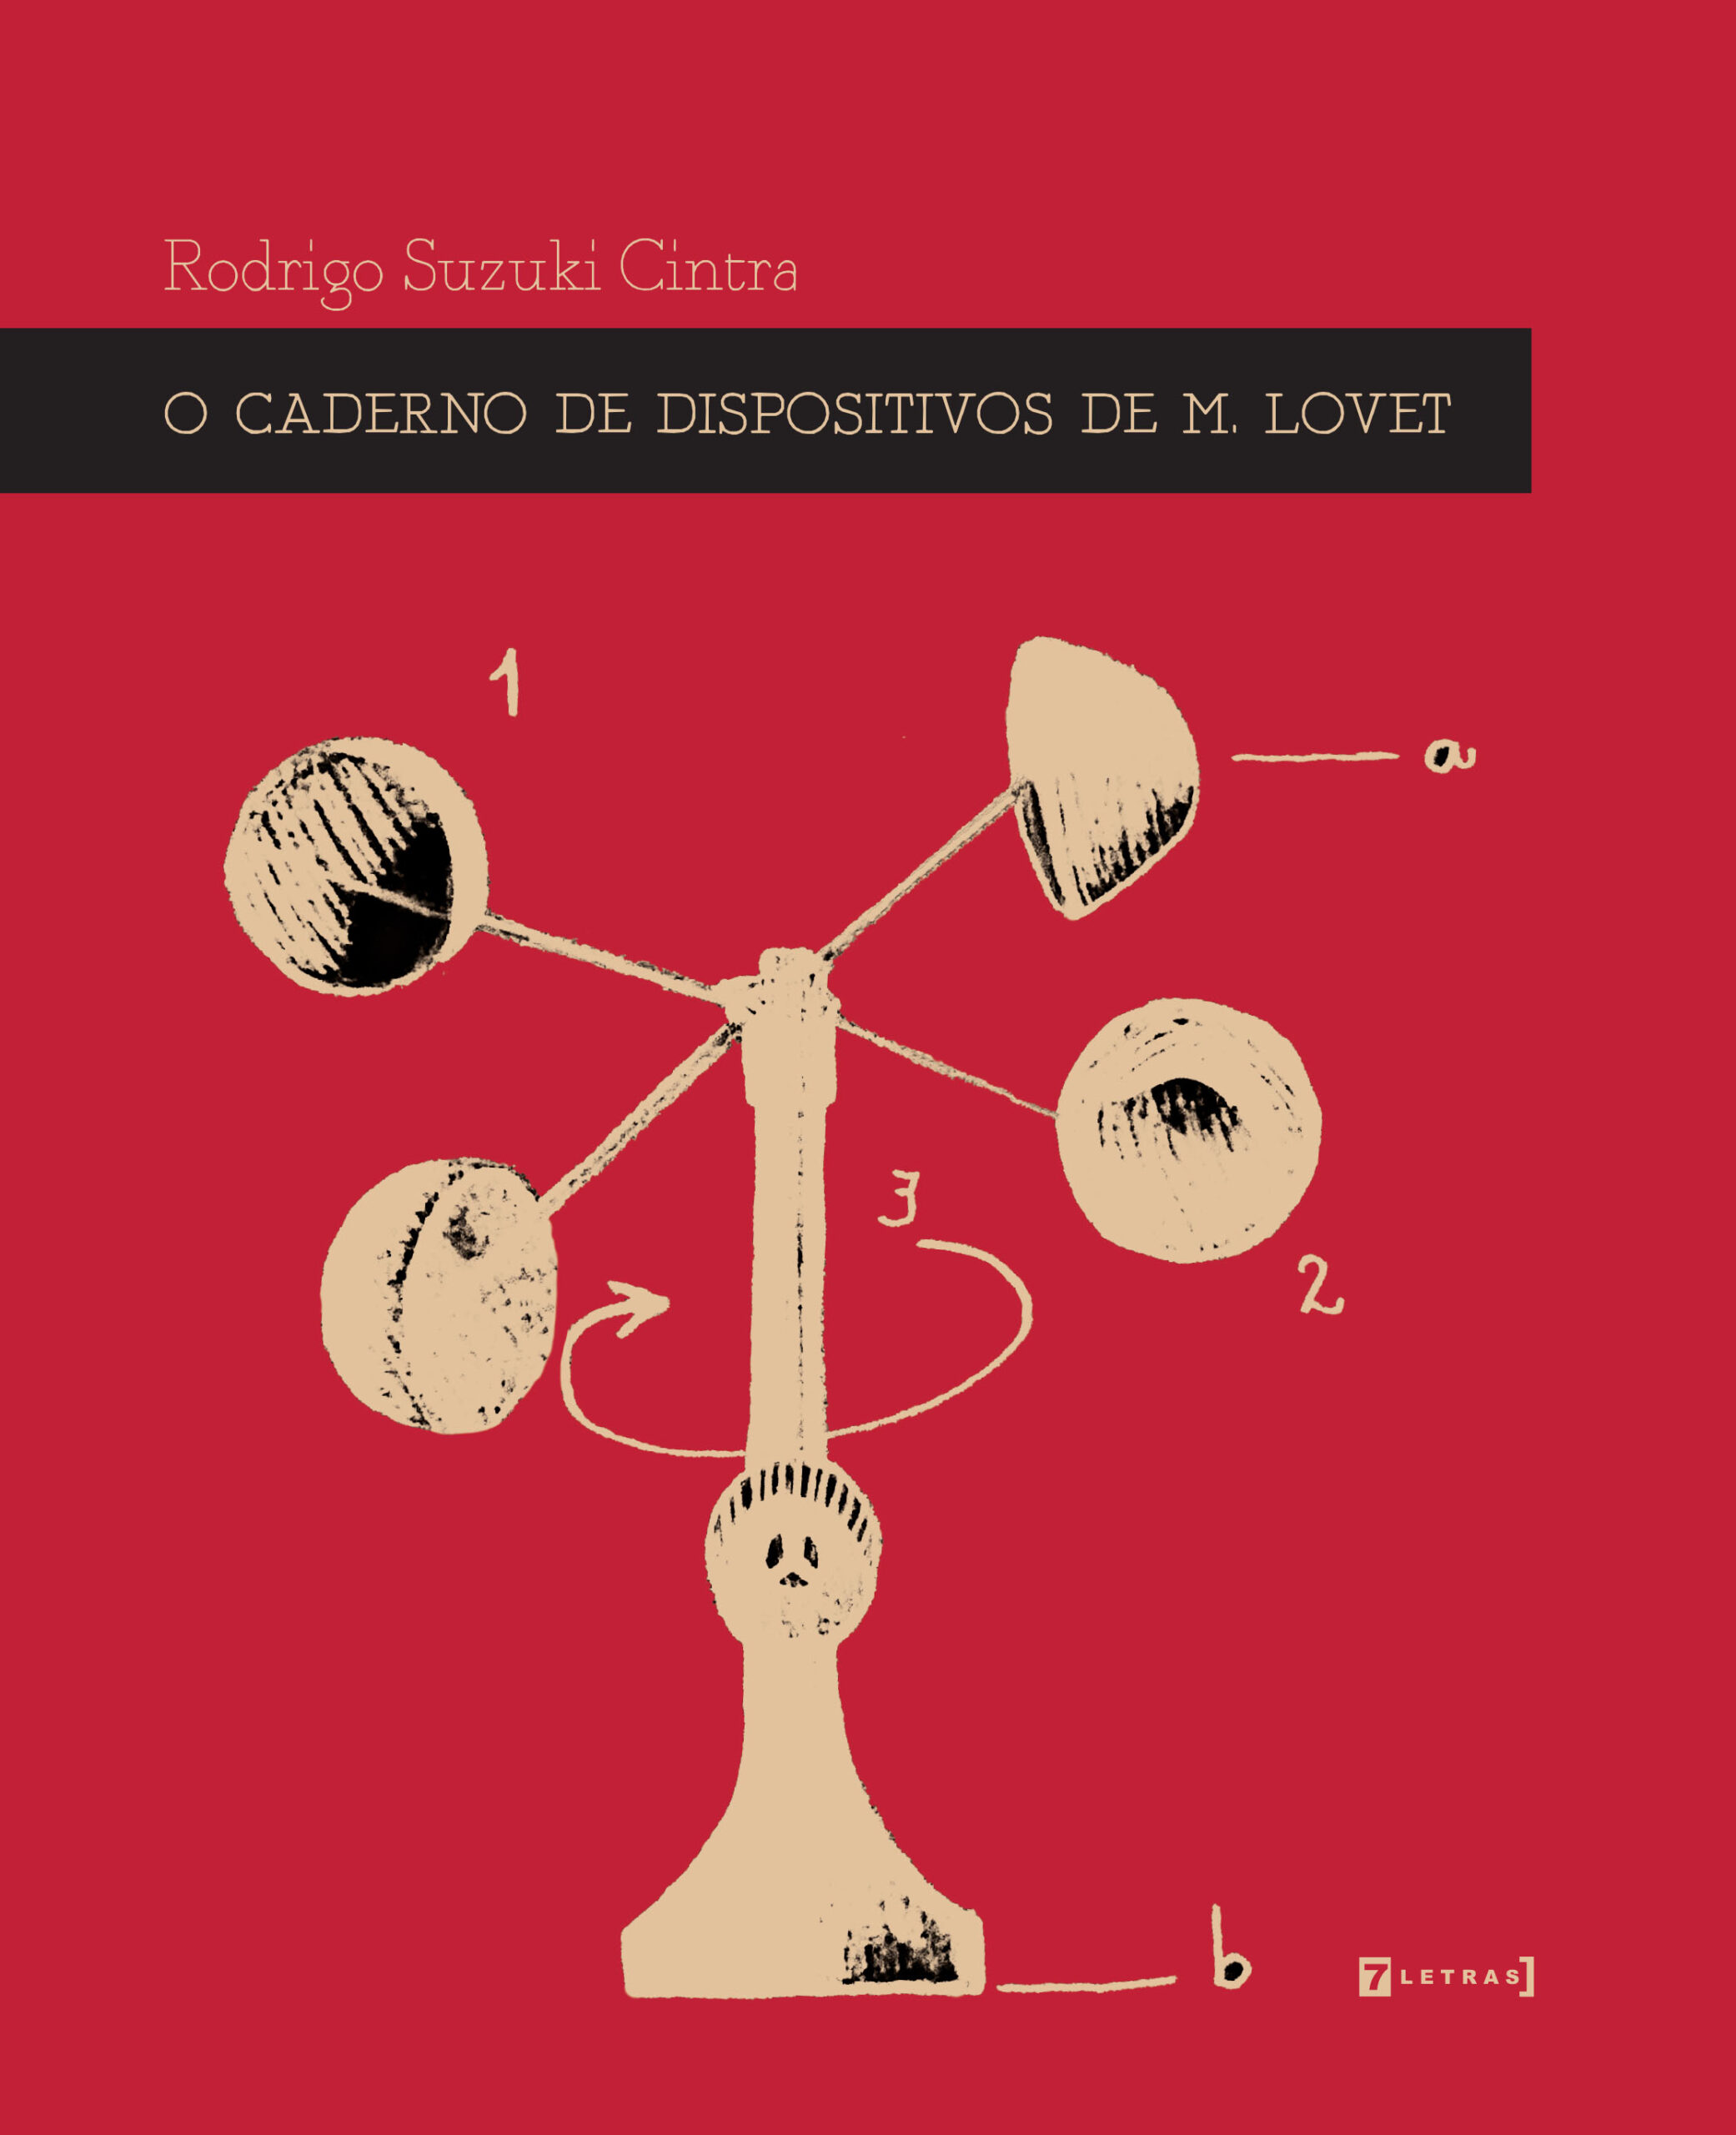 Rodrigo Suzuki  scaled - Fernando Andrade entrevista o escritor Rodrigo Suzuki Cintra sobre o livro 'O caderno de dispositivos de M. Lovet'